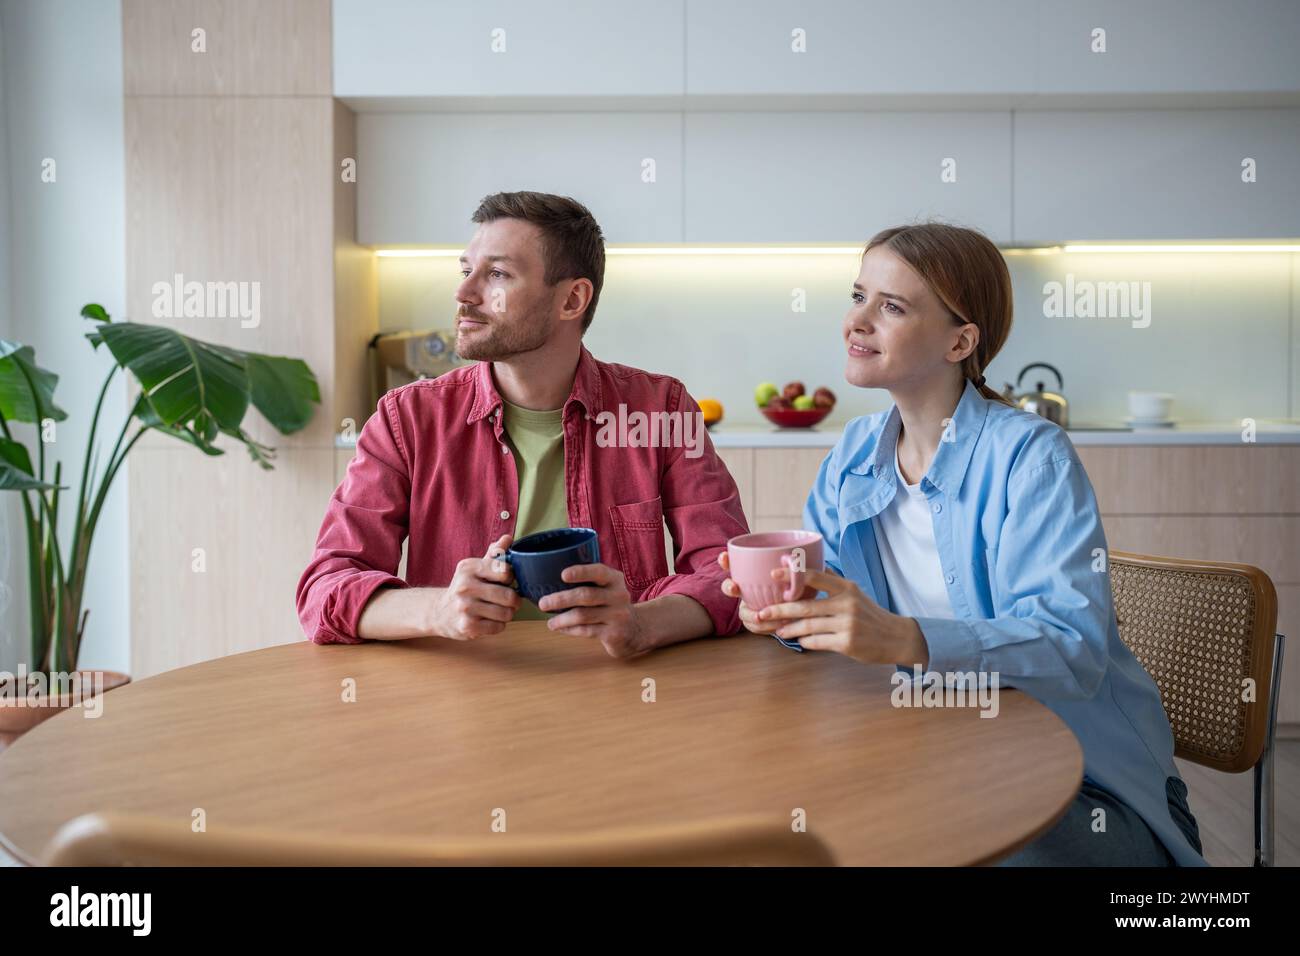 Un uomo e una donna felici si siedono in cucina con una tazza di tè, e guardano con attenzione a sognare un futuro luminoso. Foto Stock